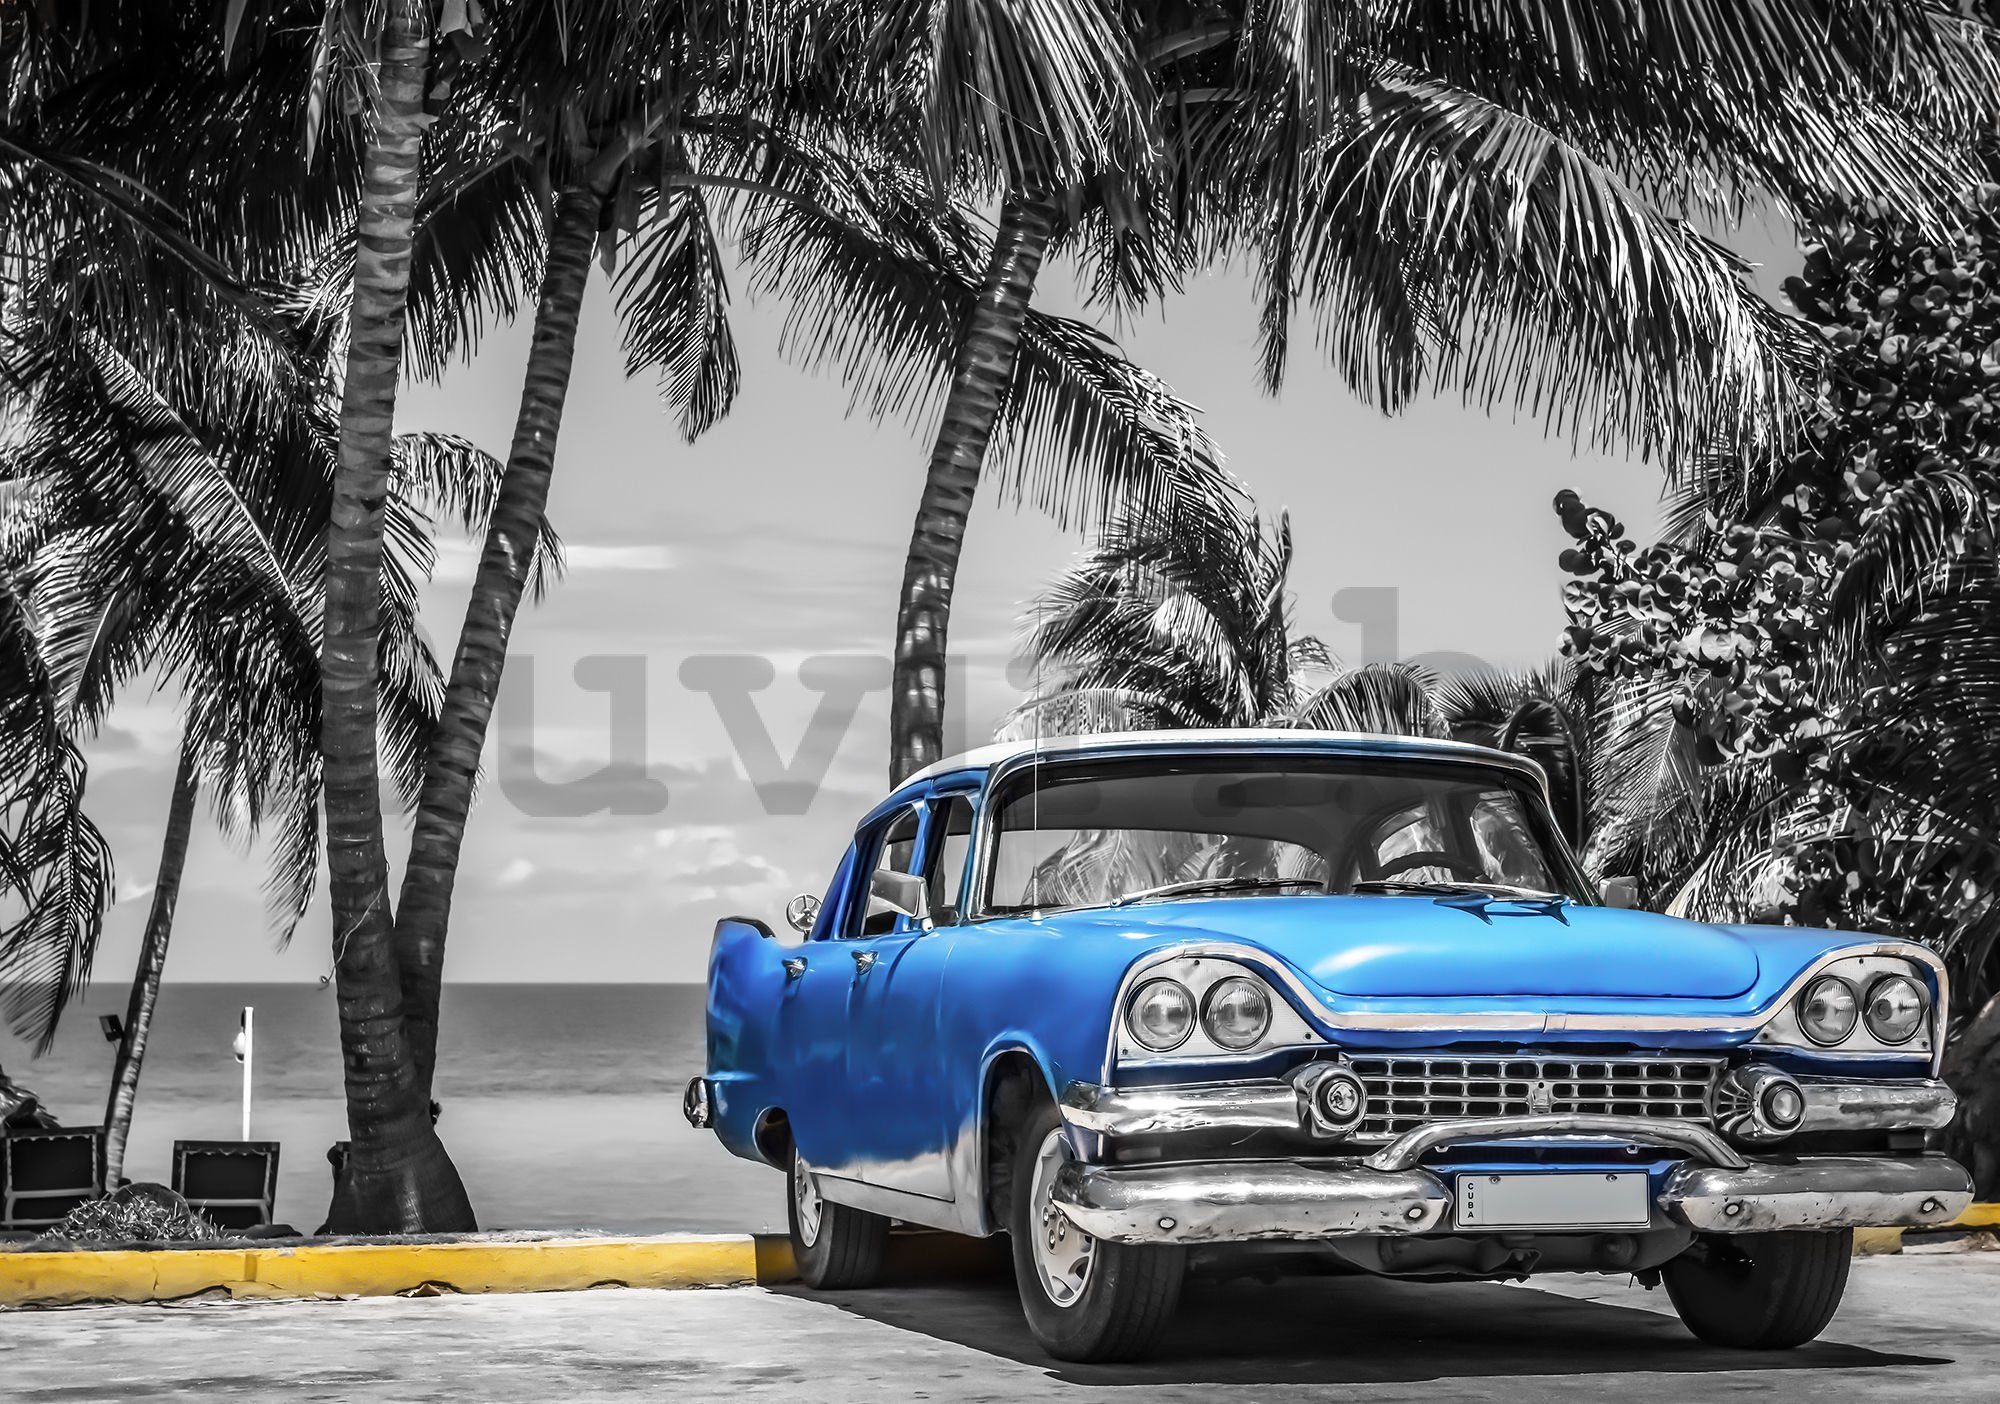 Vlies fotótapéta: Kuba kék autó a tenger mellett - 416x254 cm